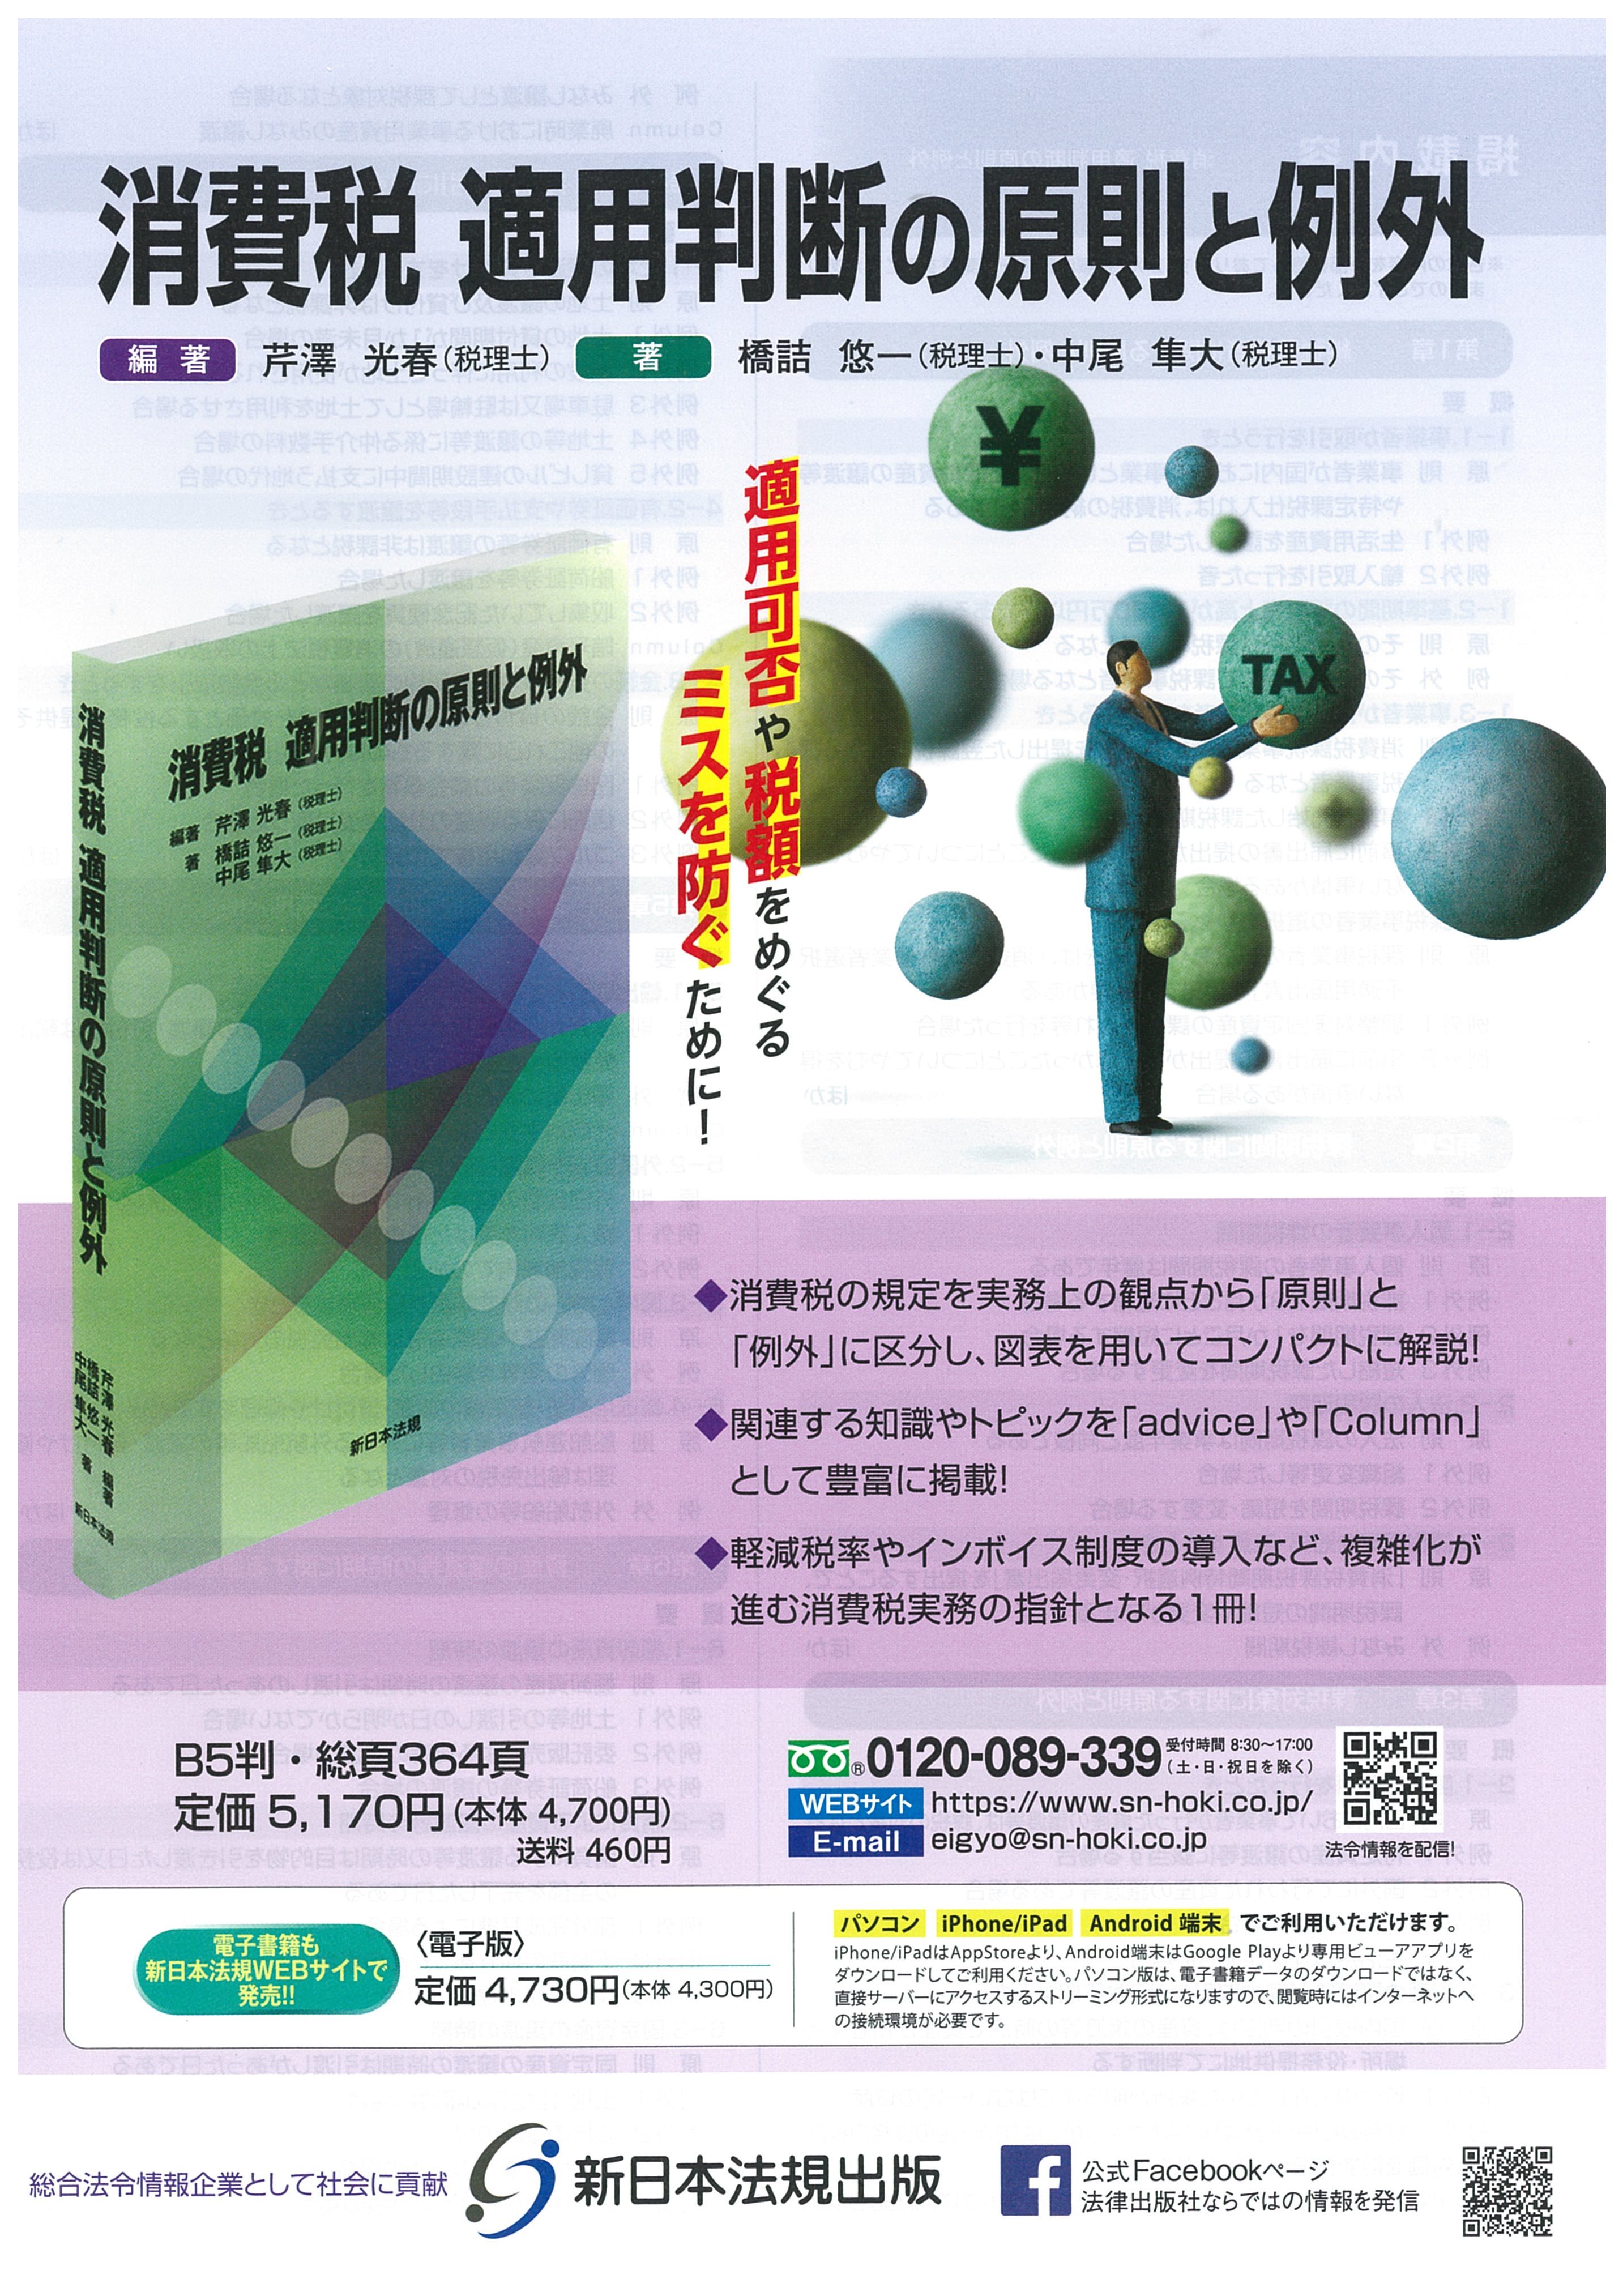 名古屋税理士協同組合 書籍販売サイト